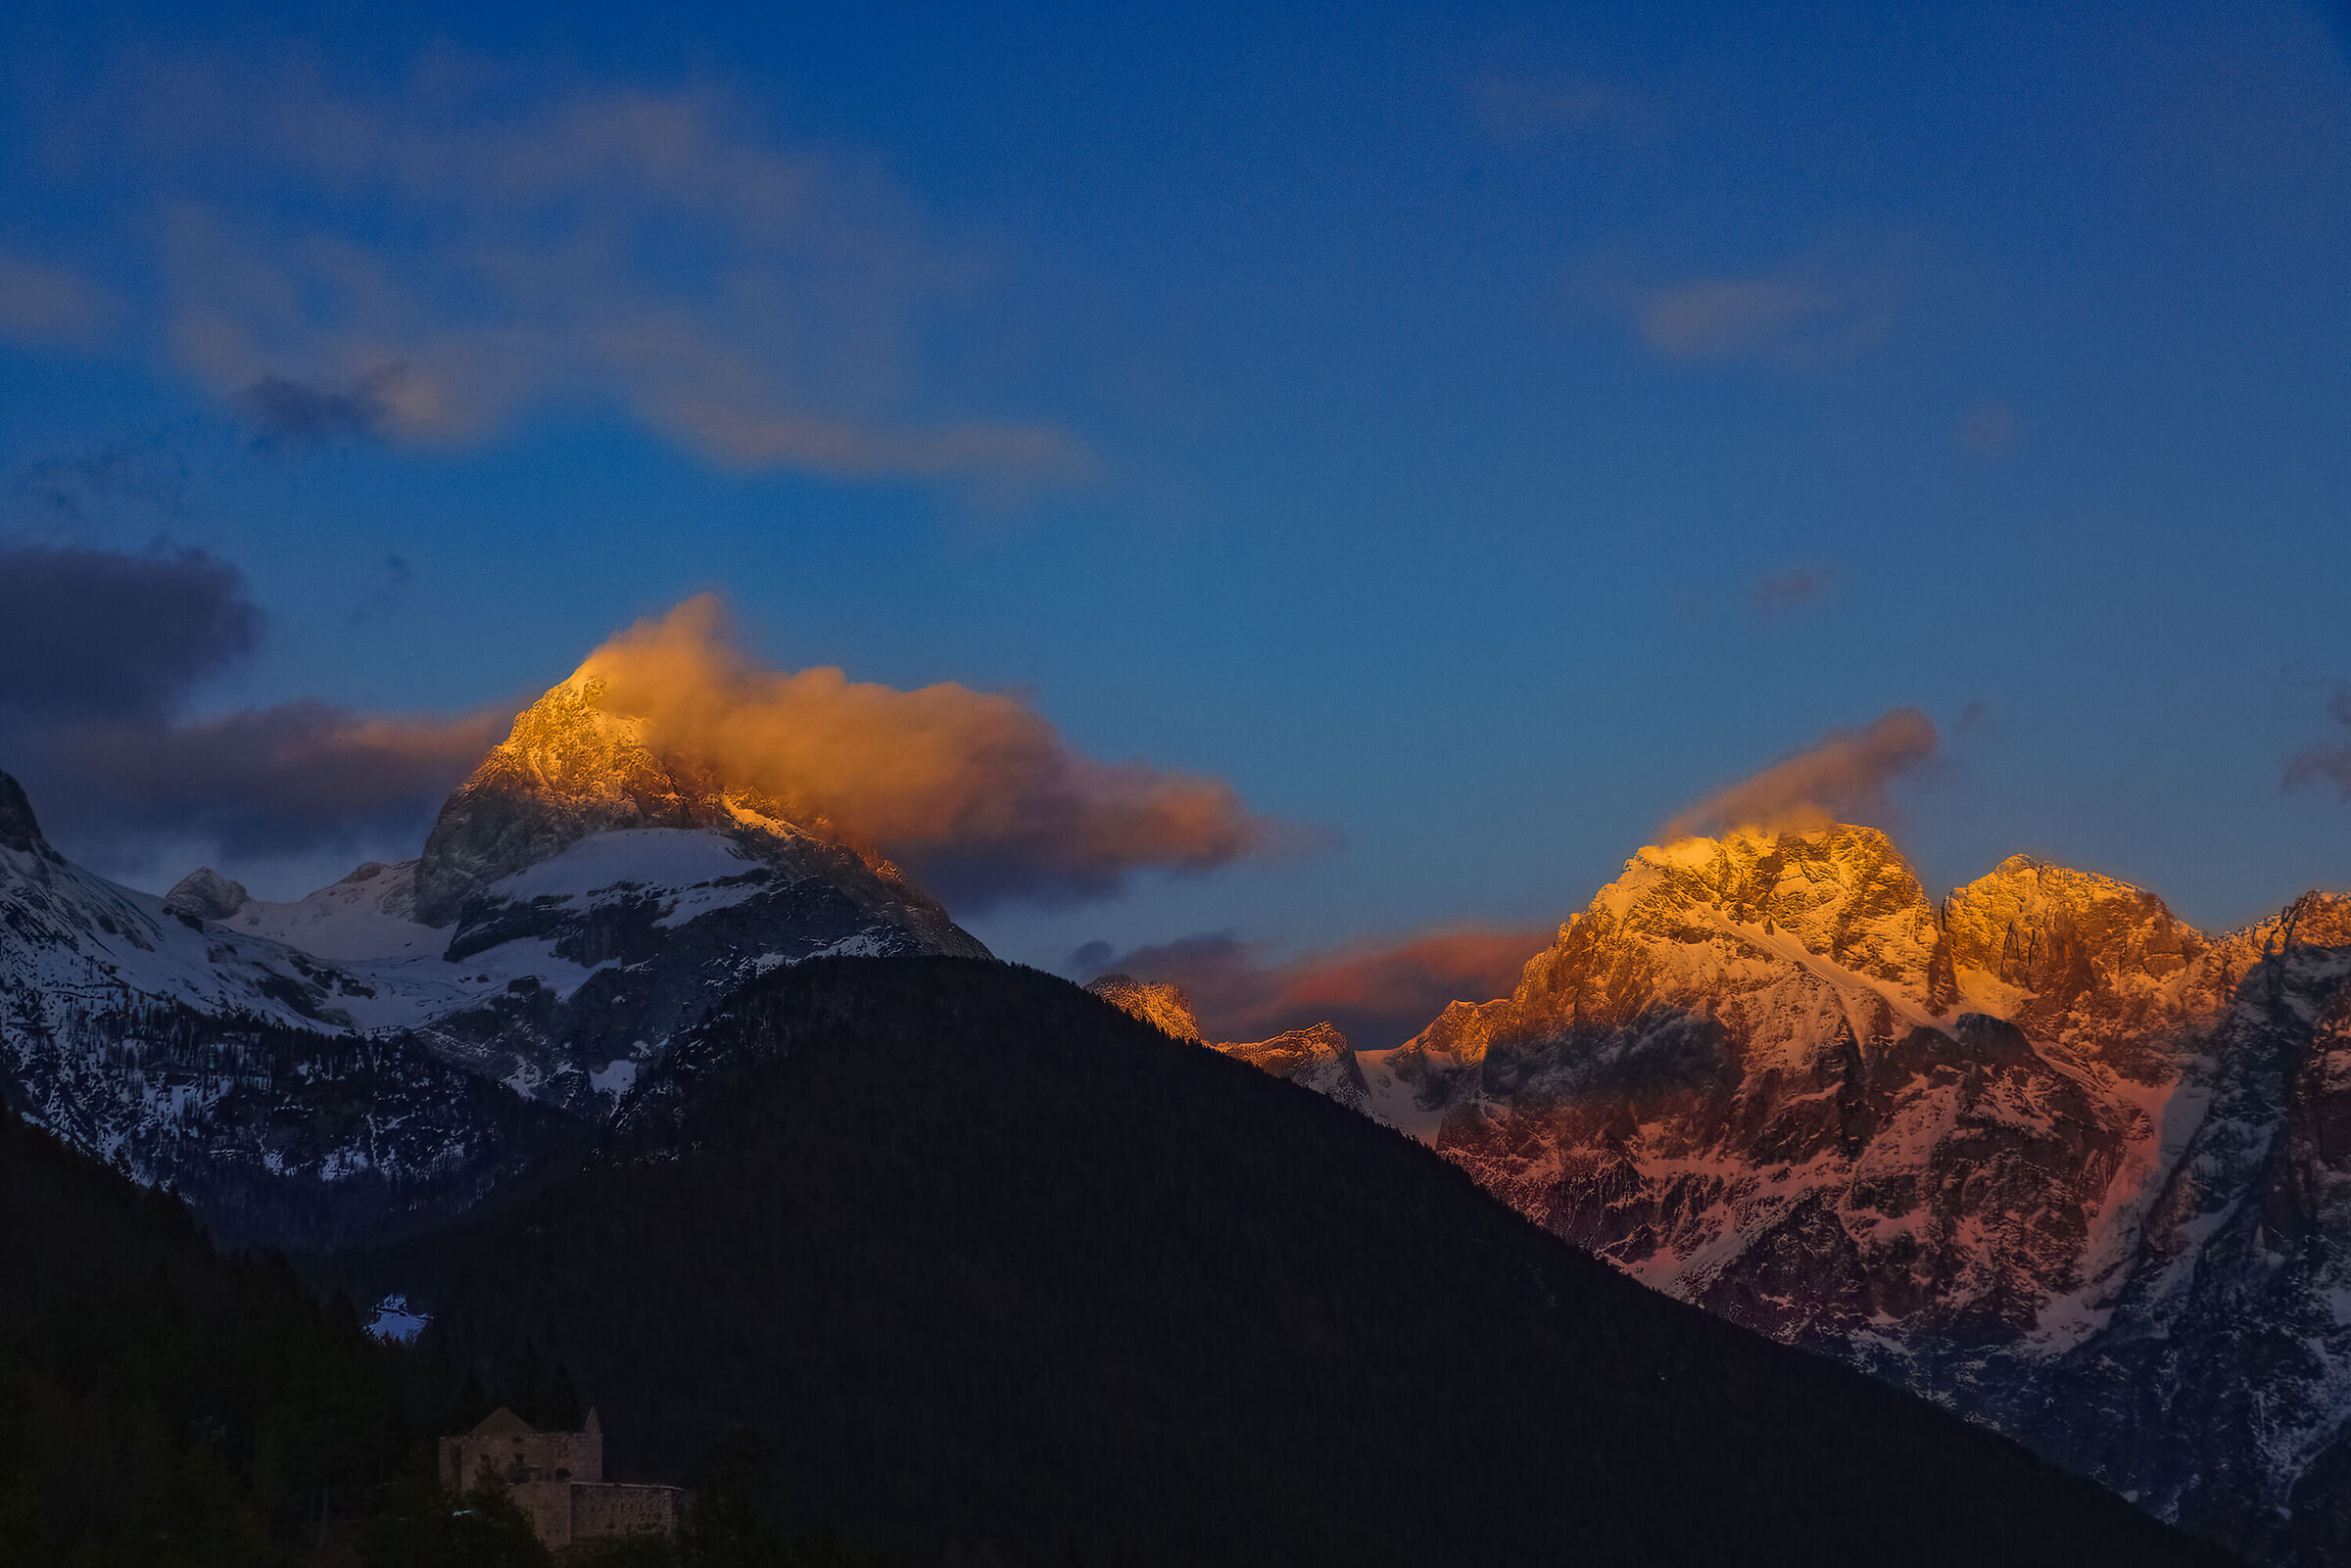 Sunset Julian Alps, Mangart and Jalovec...